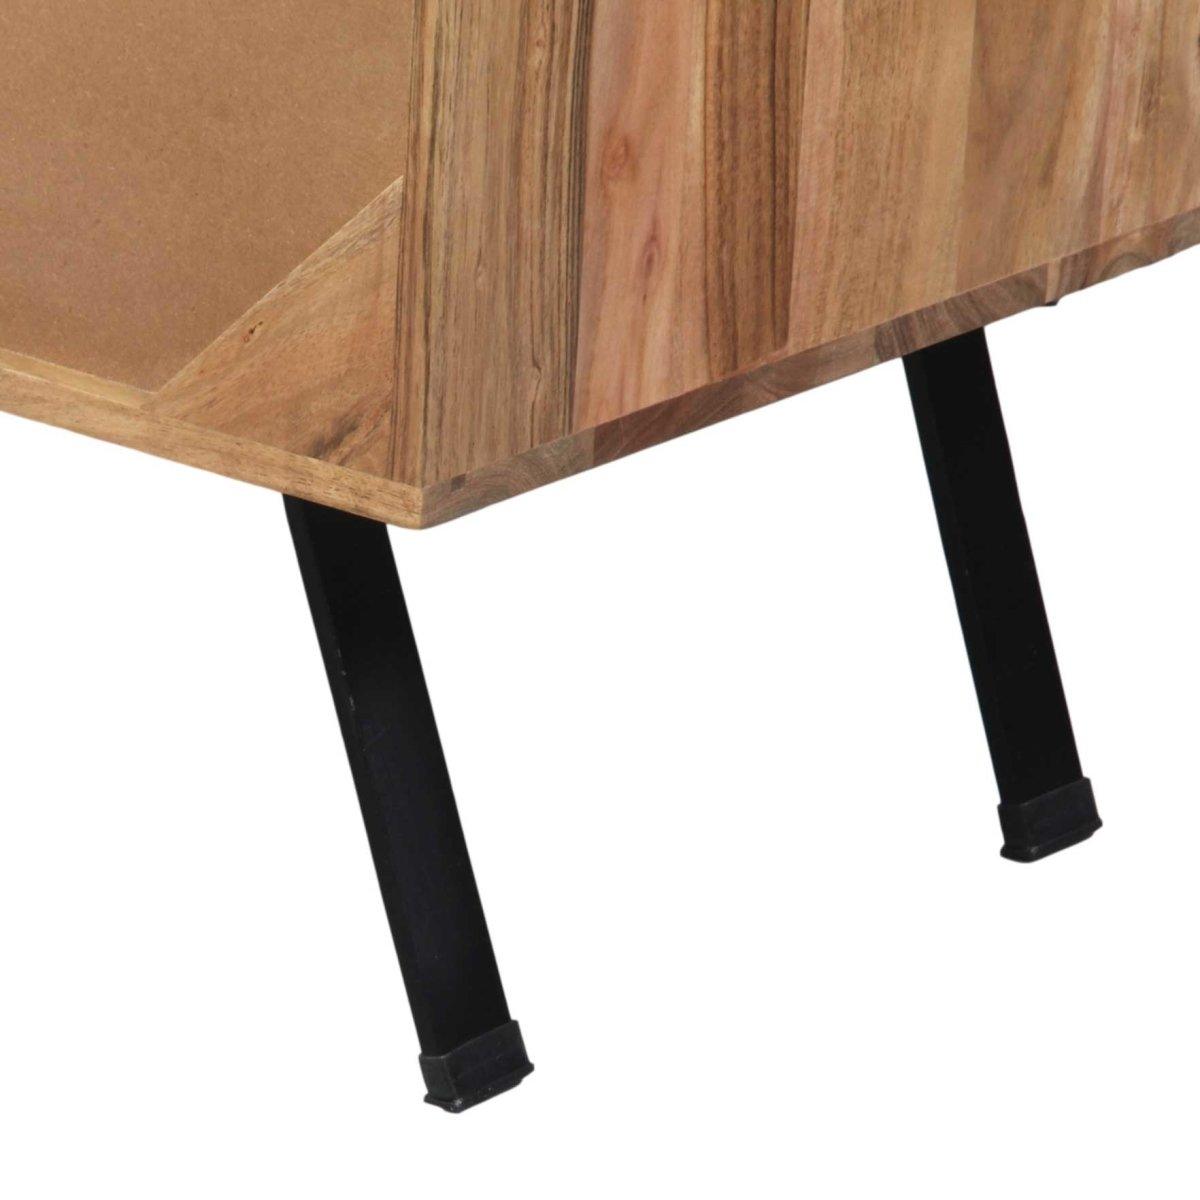 Scott Acacia wood Bar Unit - Rustic Furniture Outlet